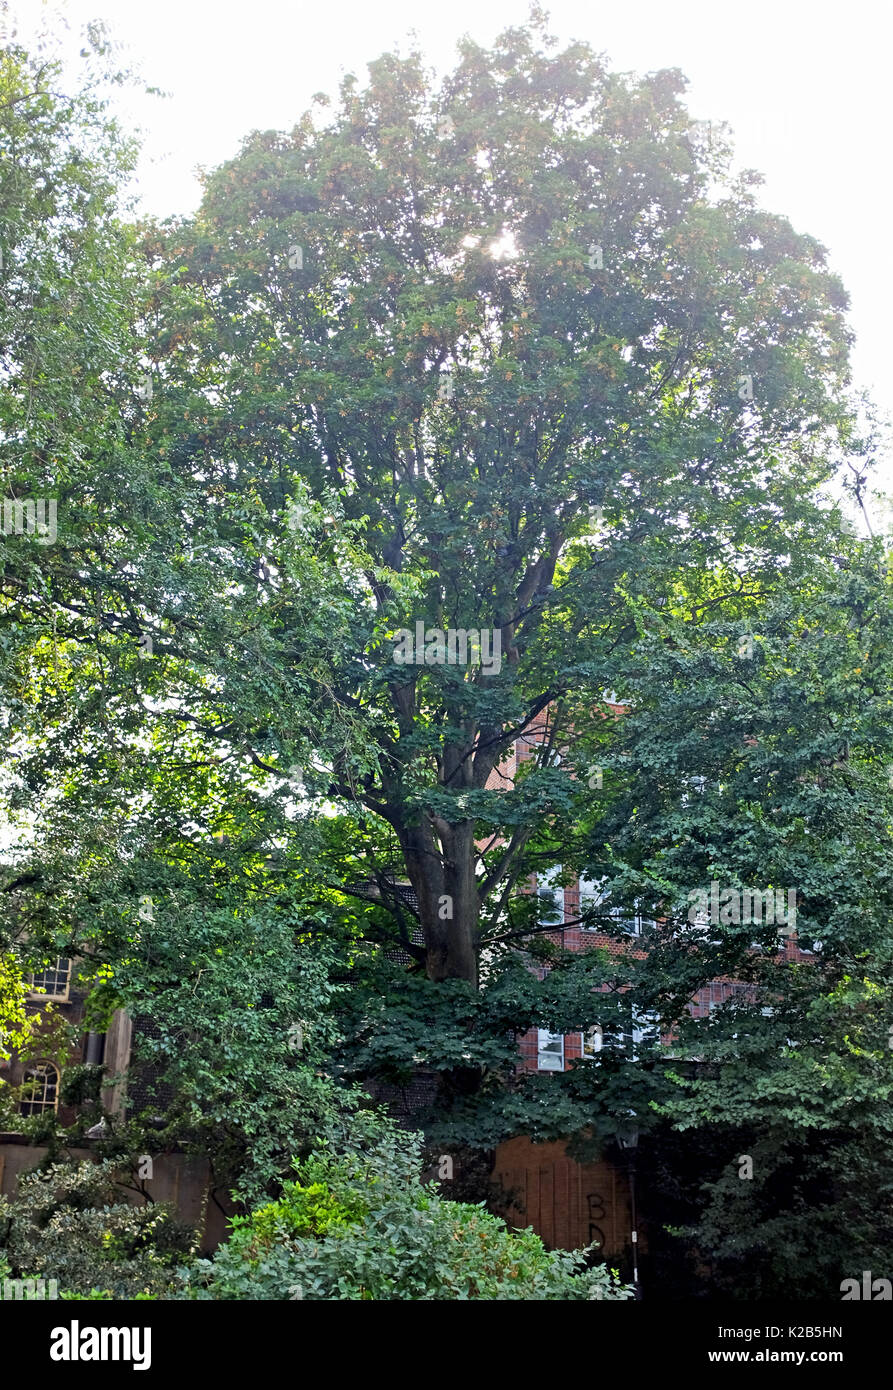 Der älteste Baum (fast 240 Jahre) im Royal Pavilion Gardens, die Englische Ulme in der Nähe von öffentlichen Toiletten befindet, hat Ulmensterben Krankheit Stockfoto